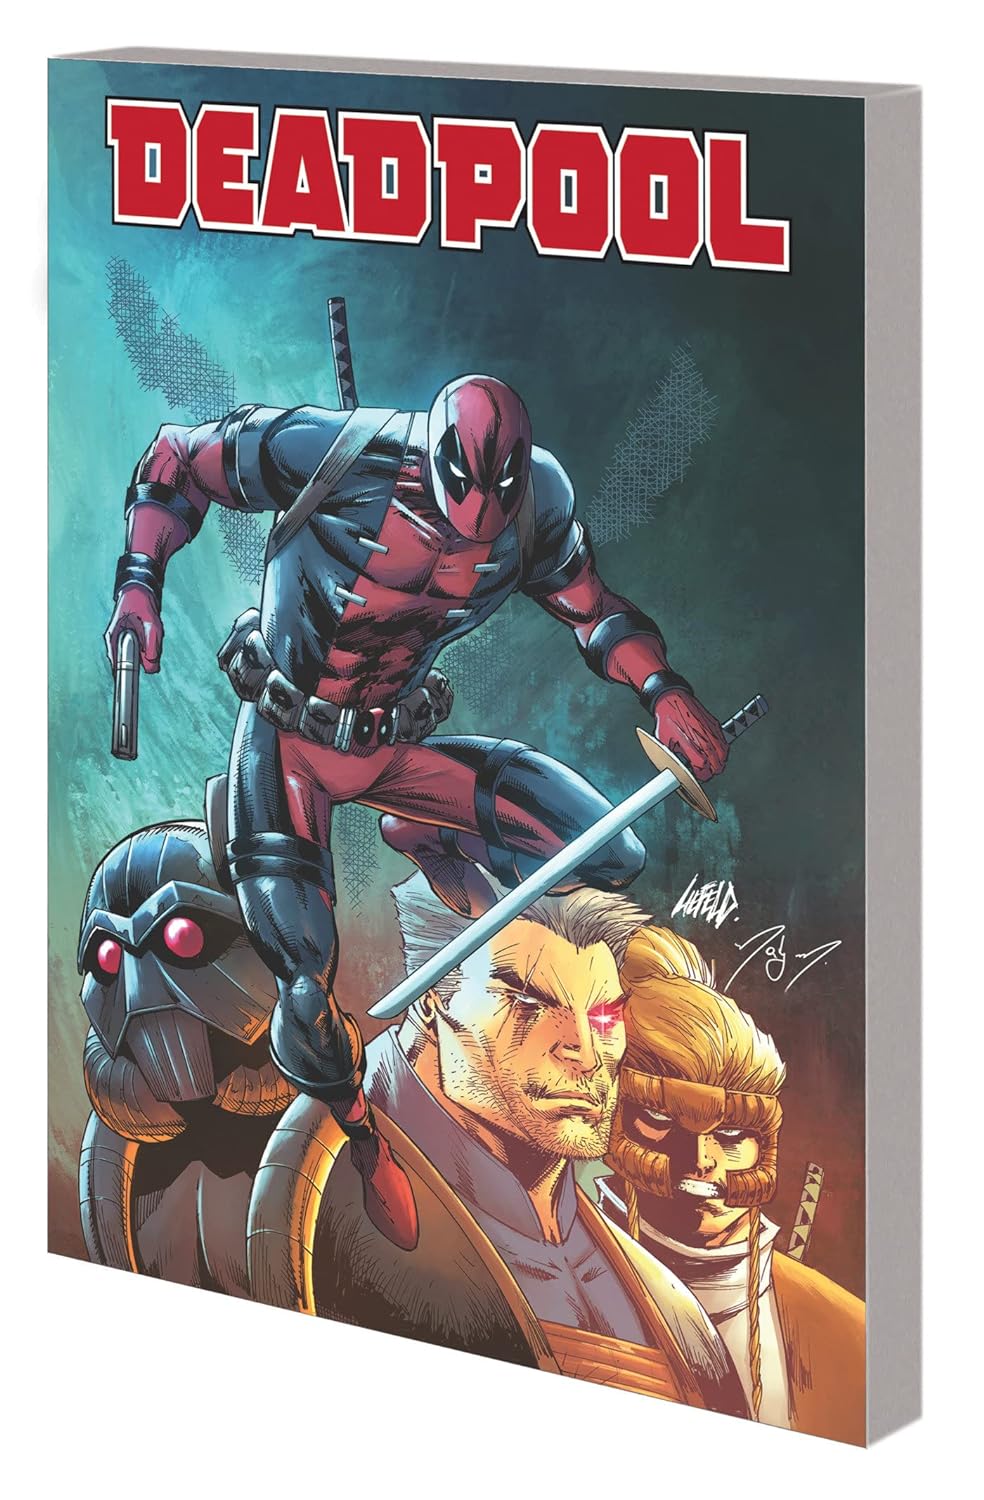 Deadpool: Bad Blood Marvel Comic Volume 1